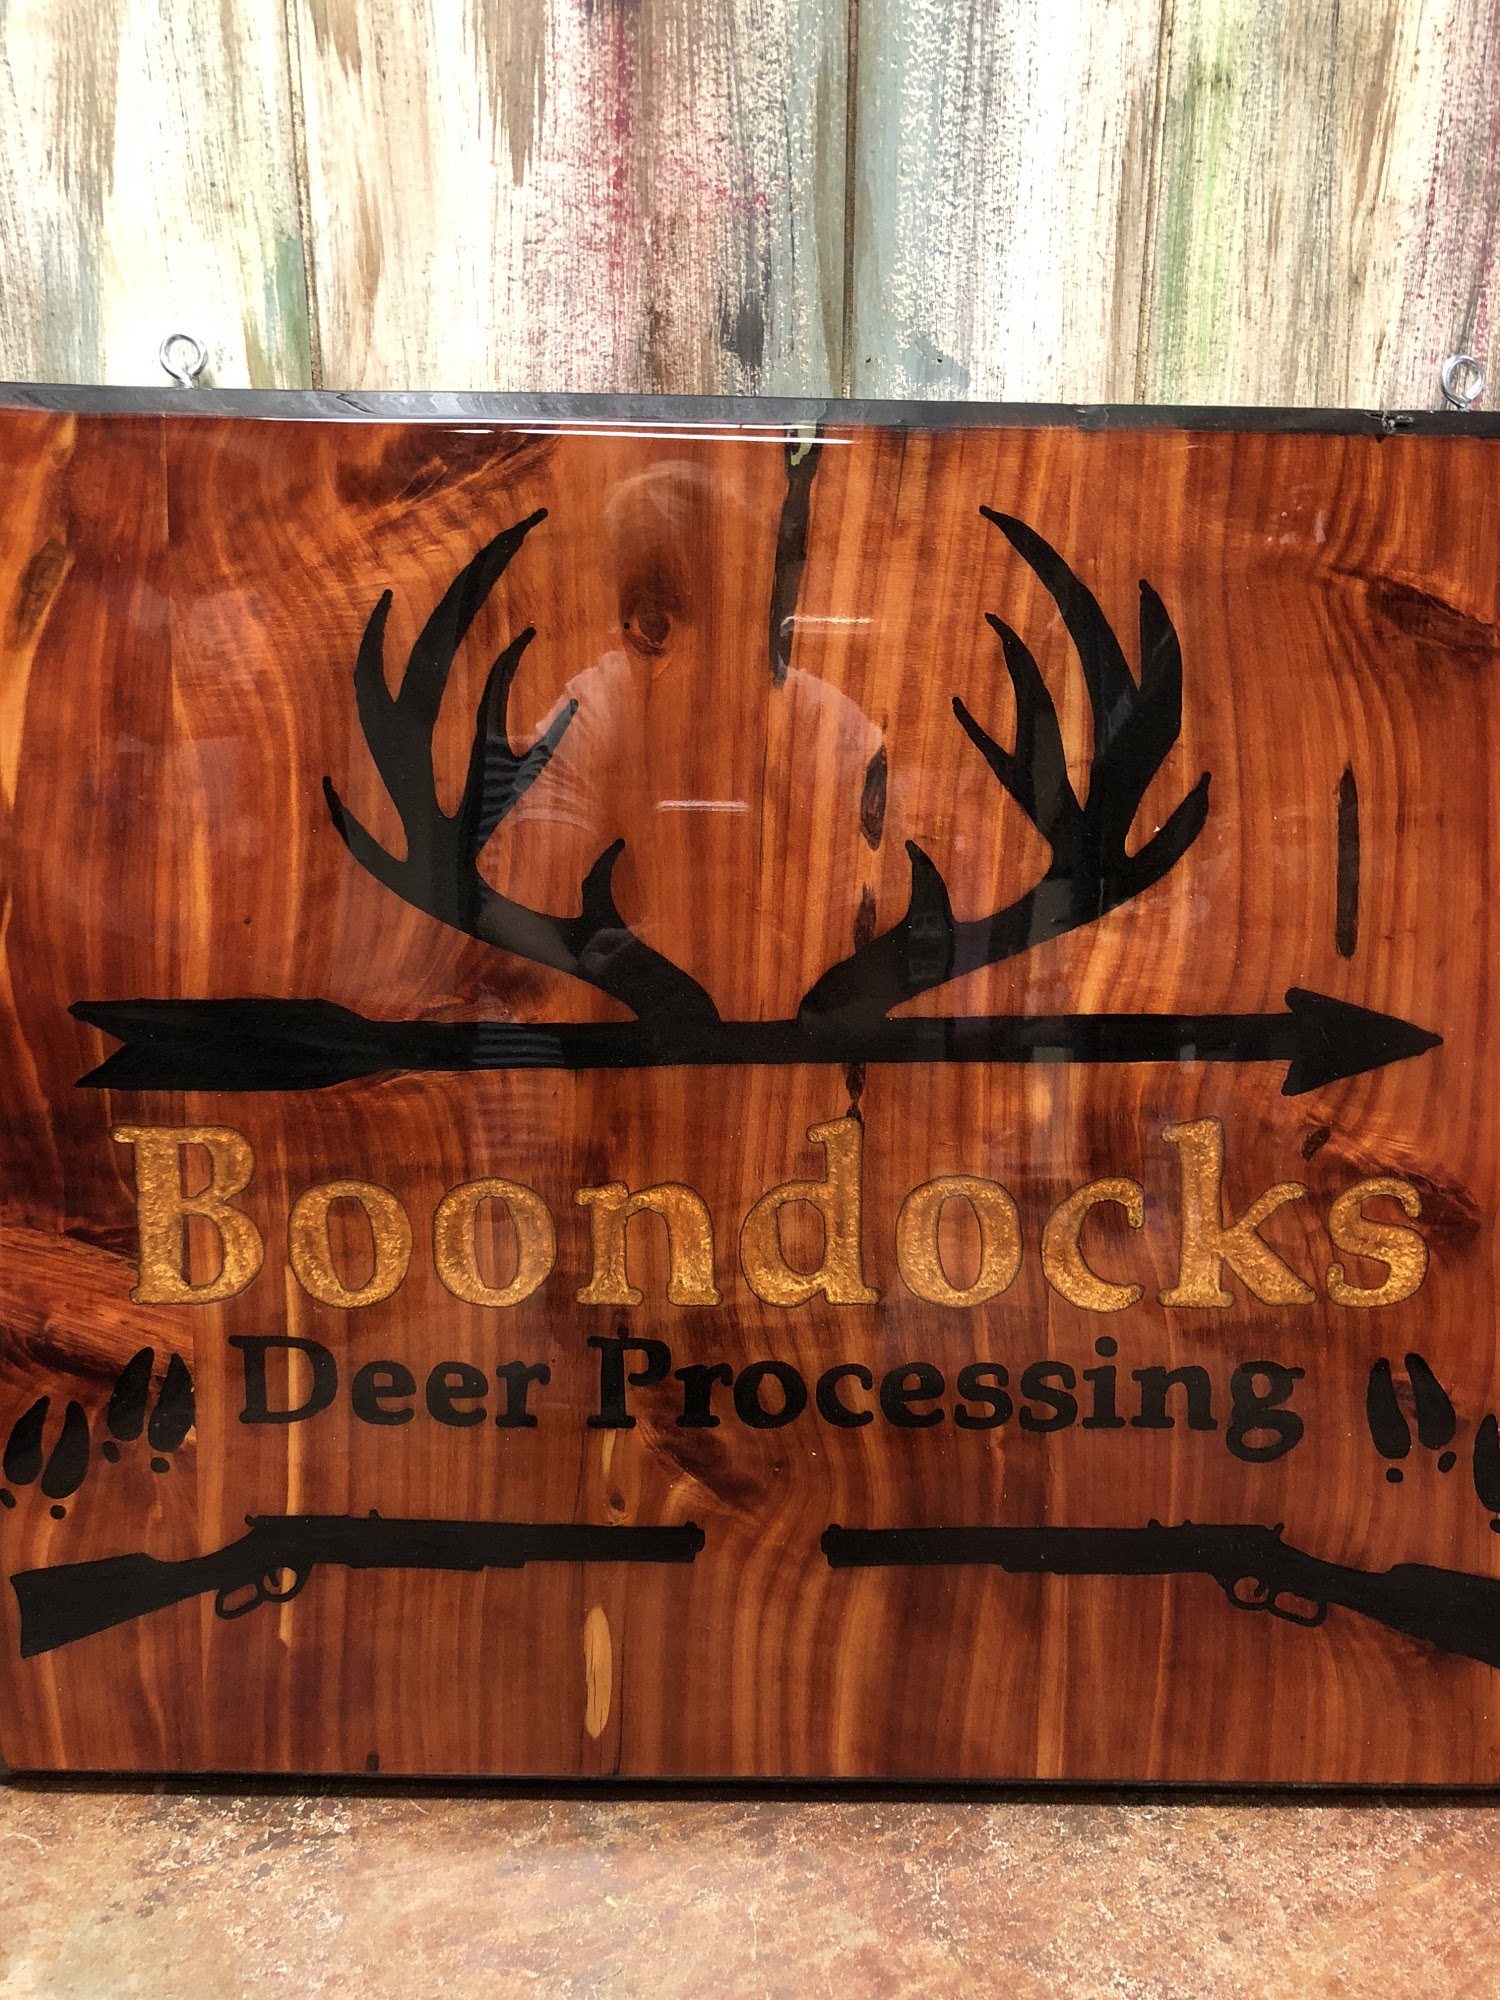 Boon-Dock’s Deer Processing